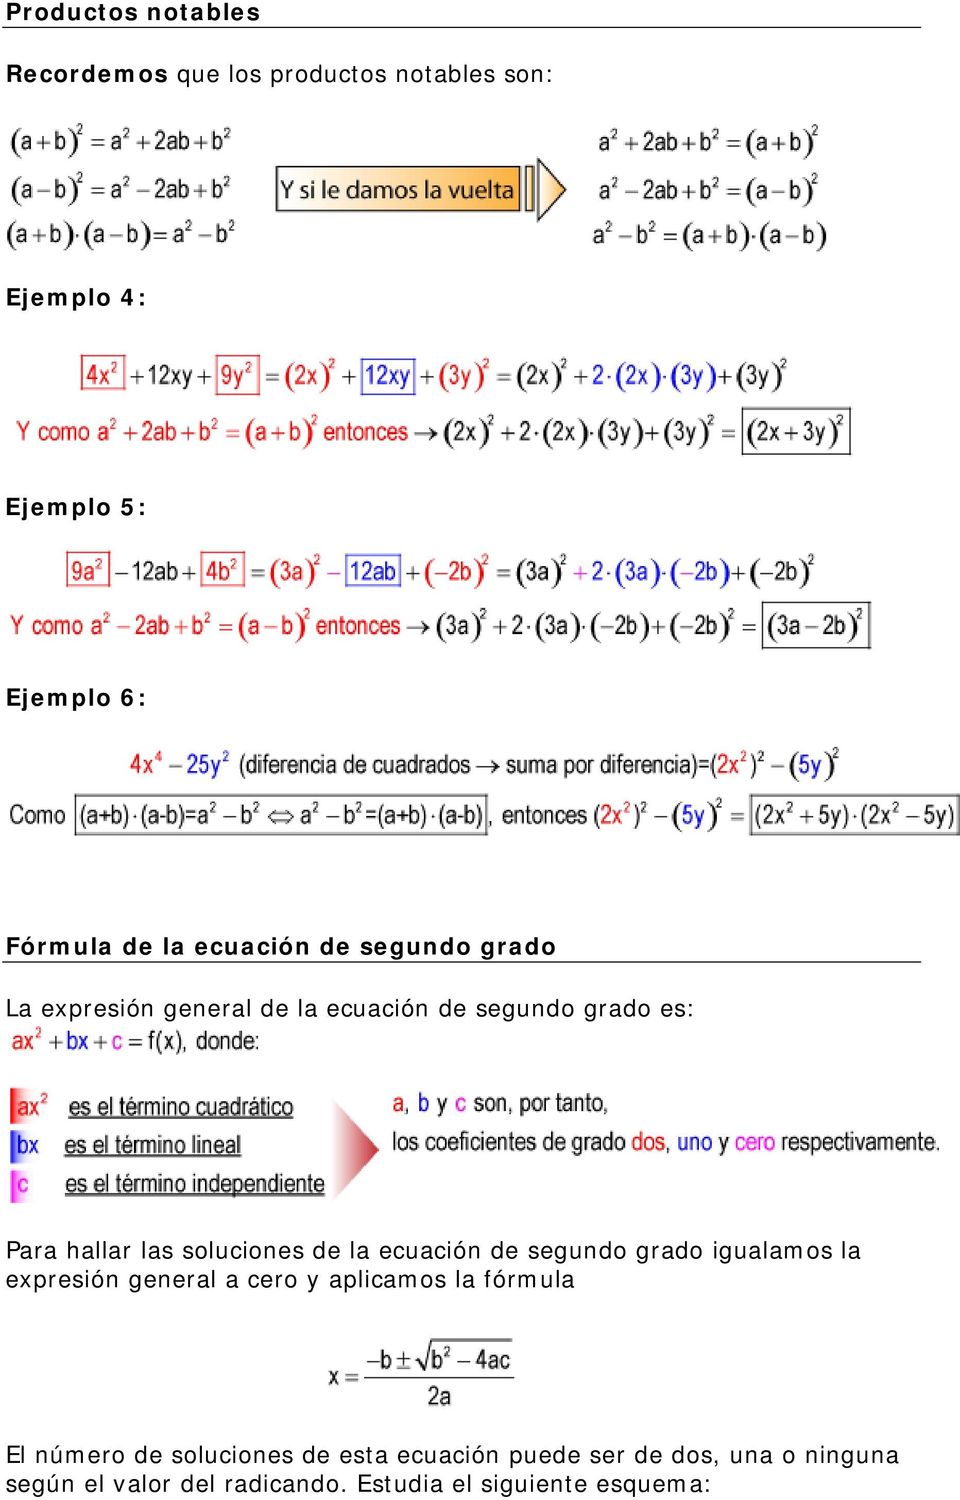 de la ecuación de segundo grado igualamos la expresión general a cero y aplicamos la fórmula El número de